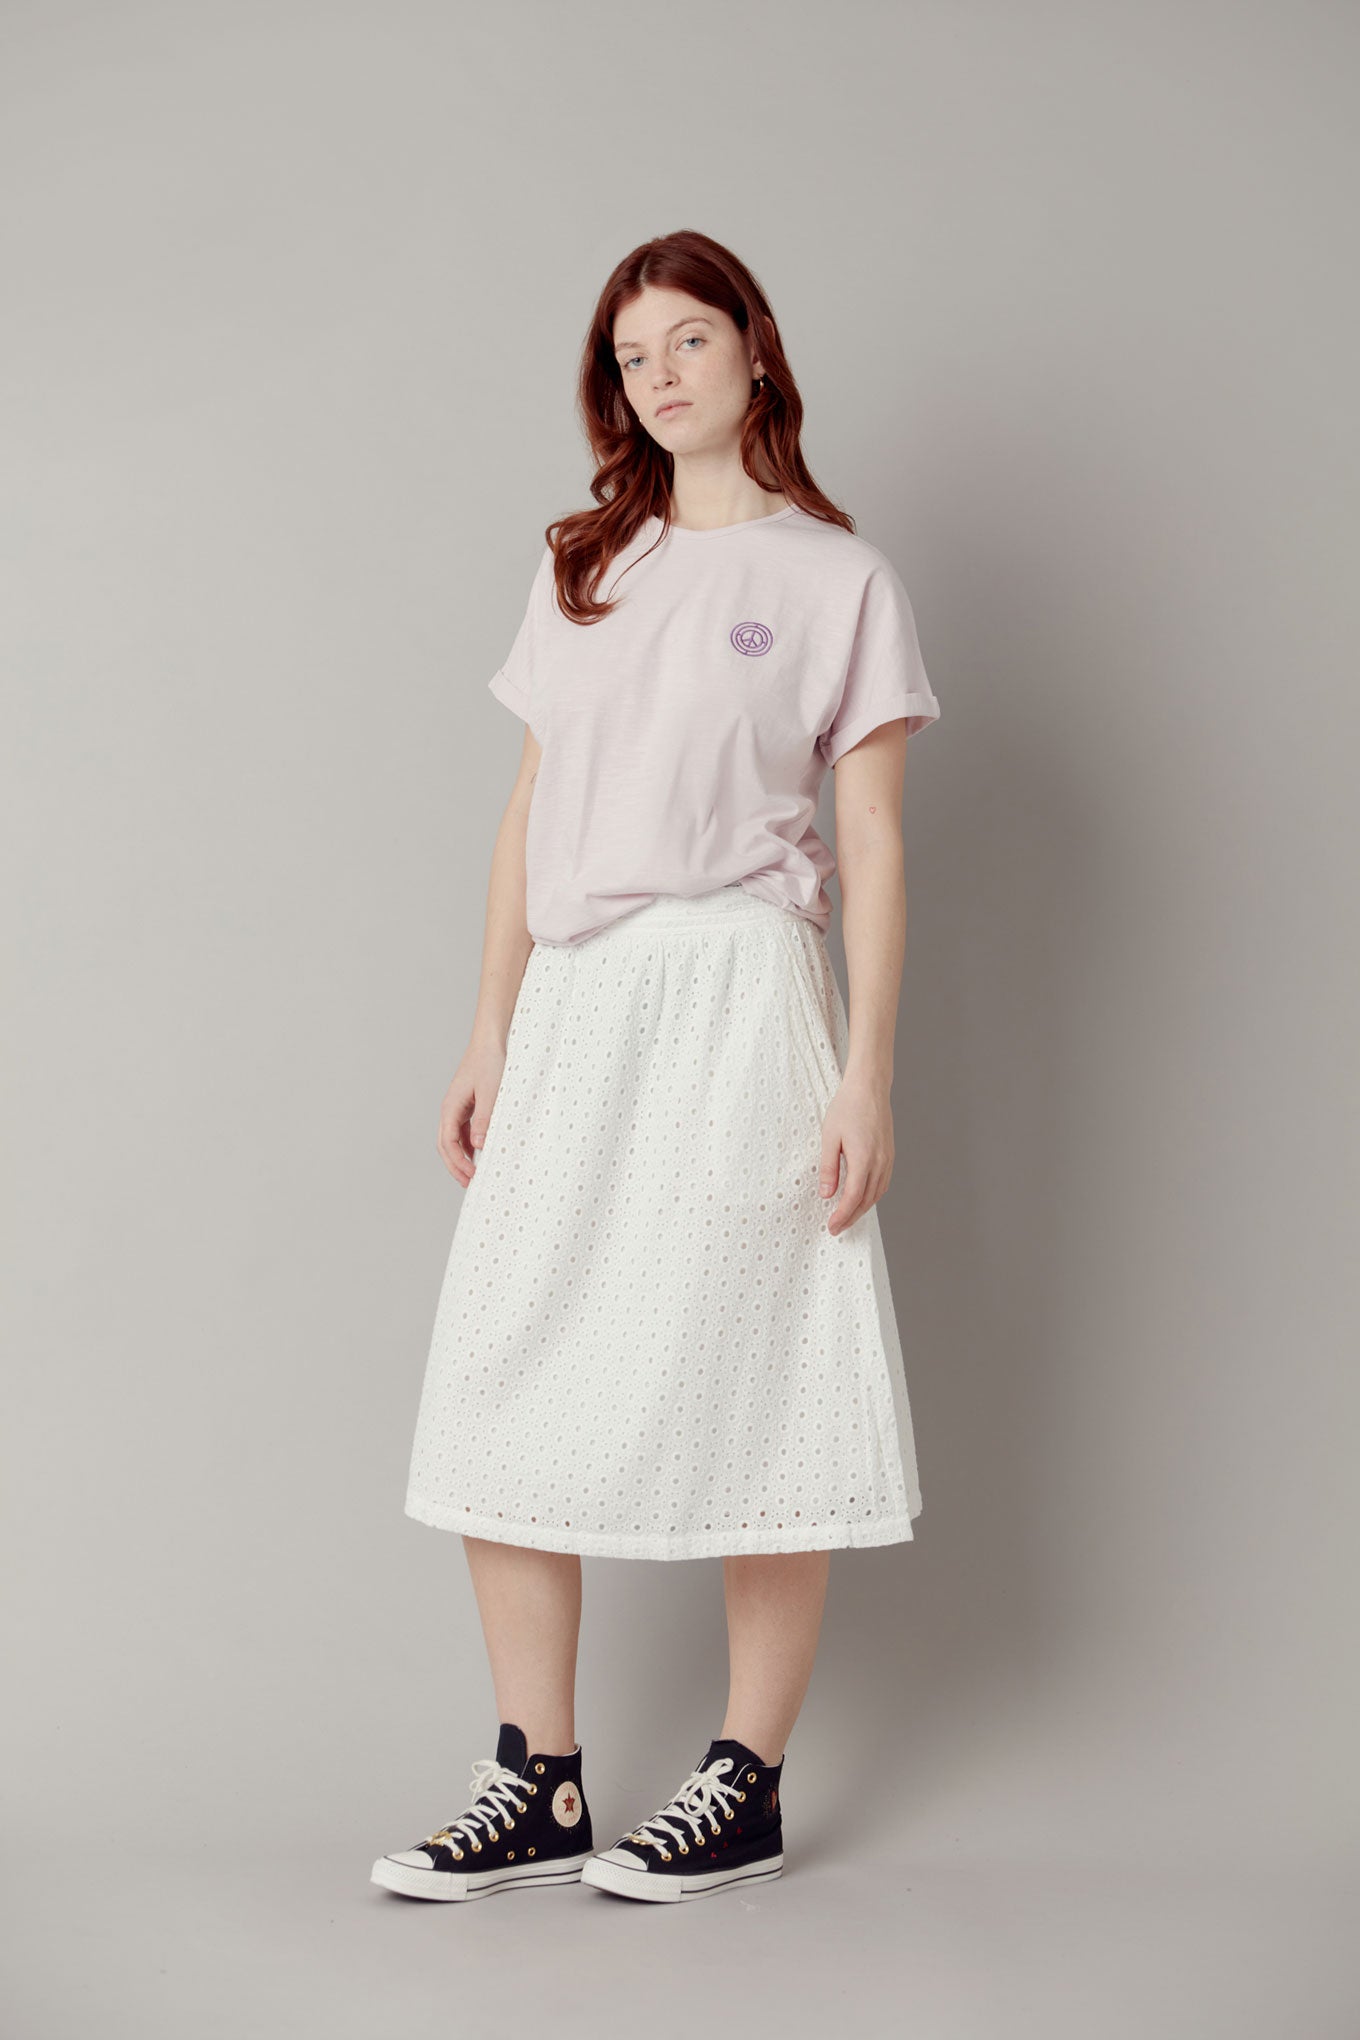 NAMI Organic Cotton Midi Skirt - White, SIZE 5 / UK 16 / EUR 44